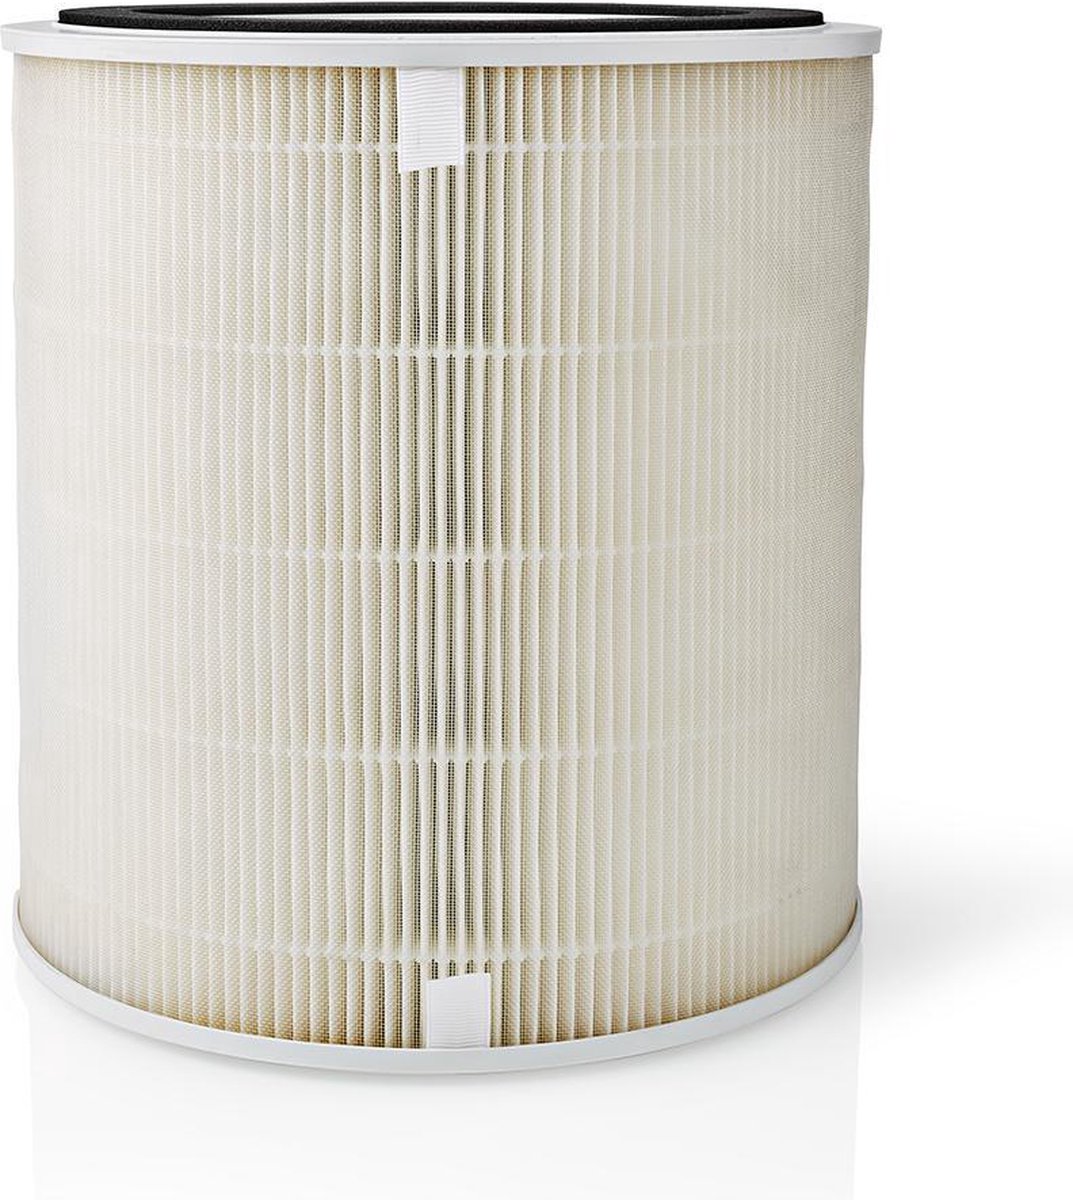 Nedis Filter Voor Luchtverfrisser - Aipu300af - Wit